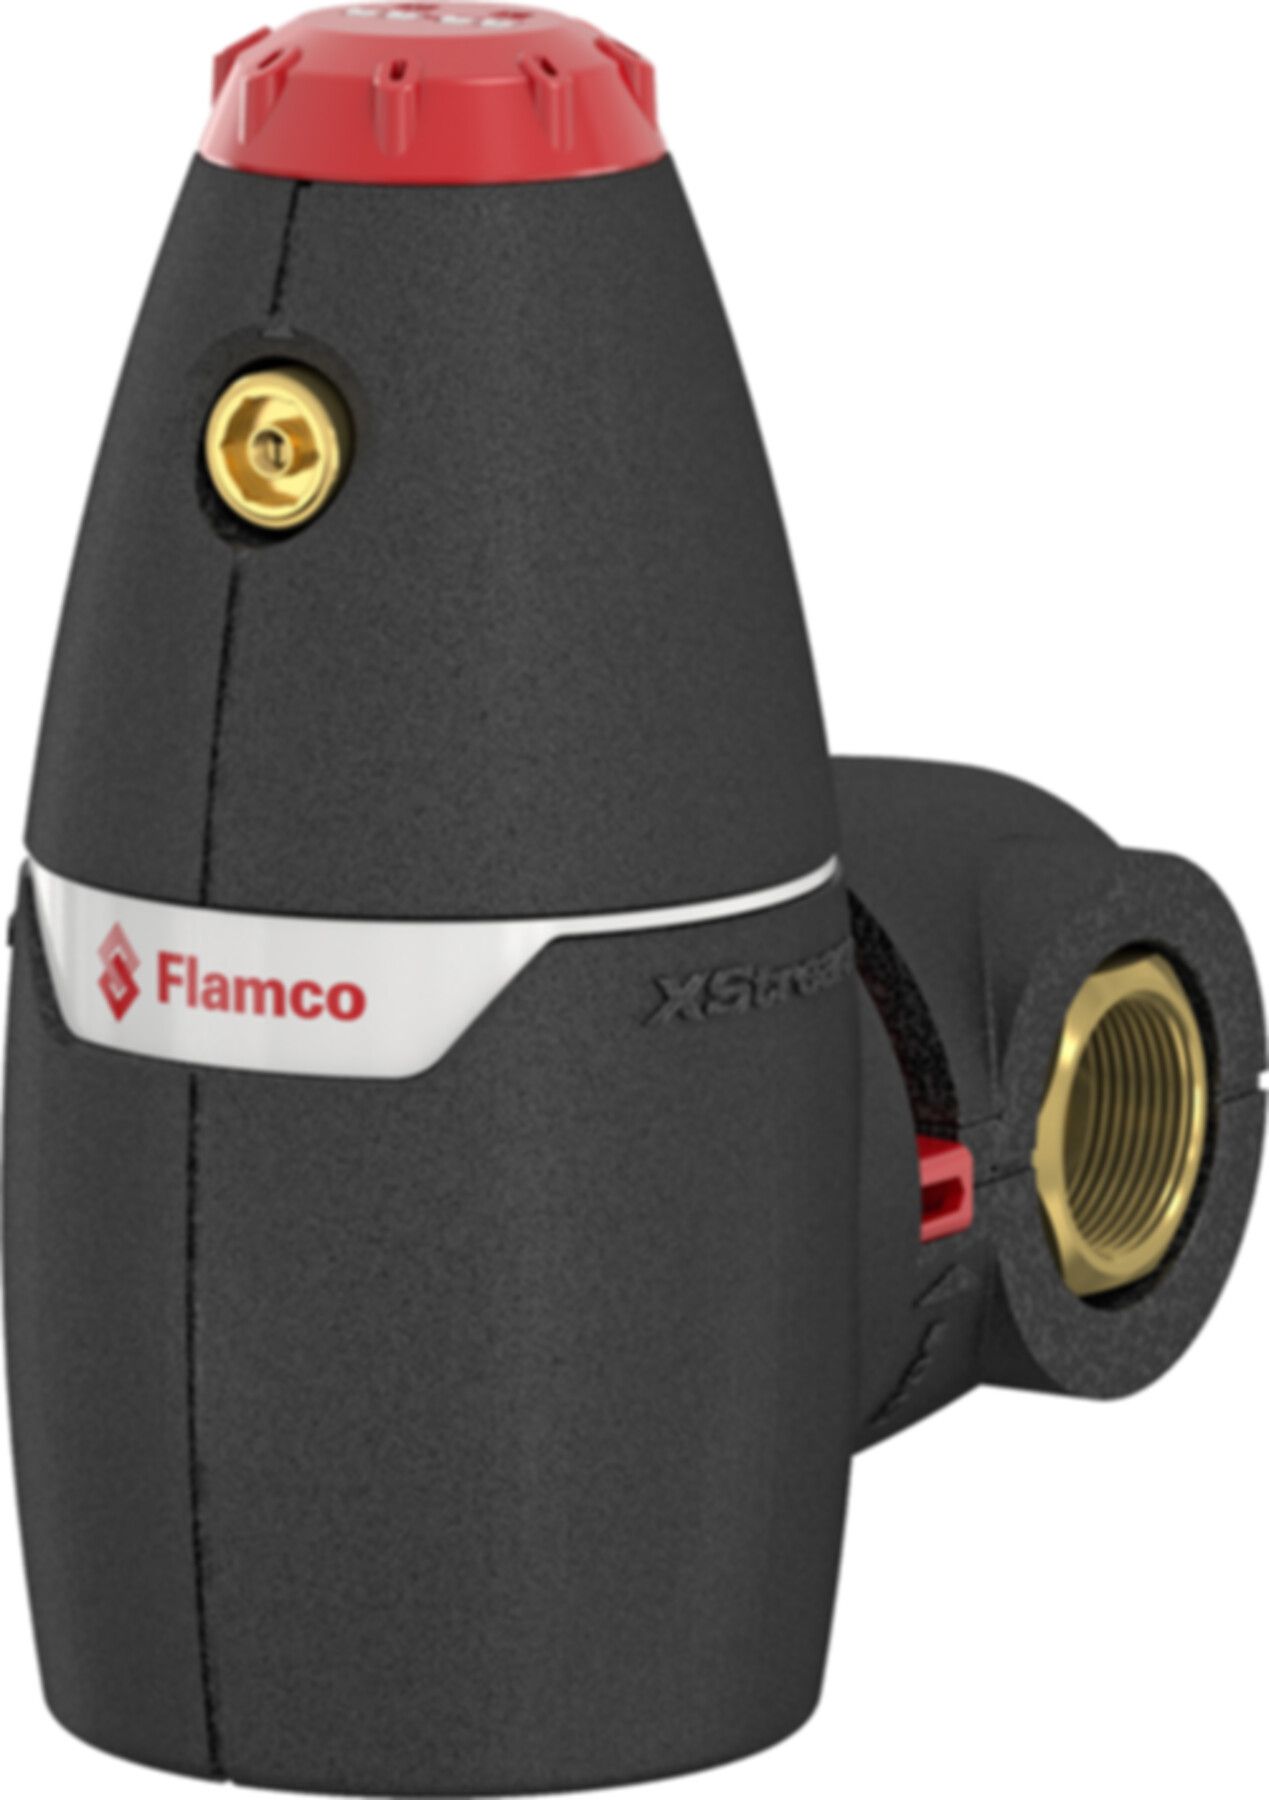 Luftabscheider FLAMCO XStream Vent G 2 F - Flamco Luft- und Schlammabscheider